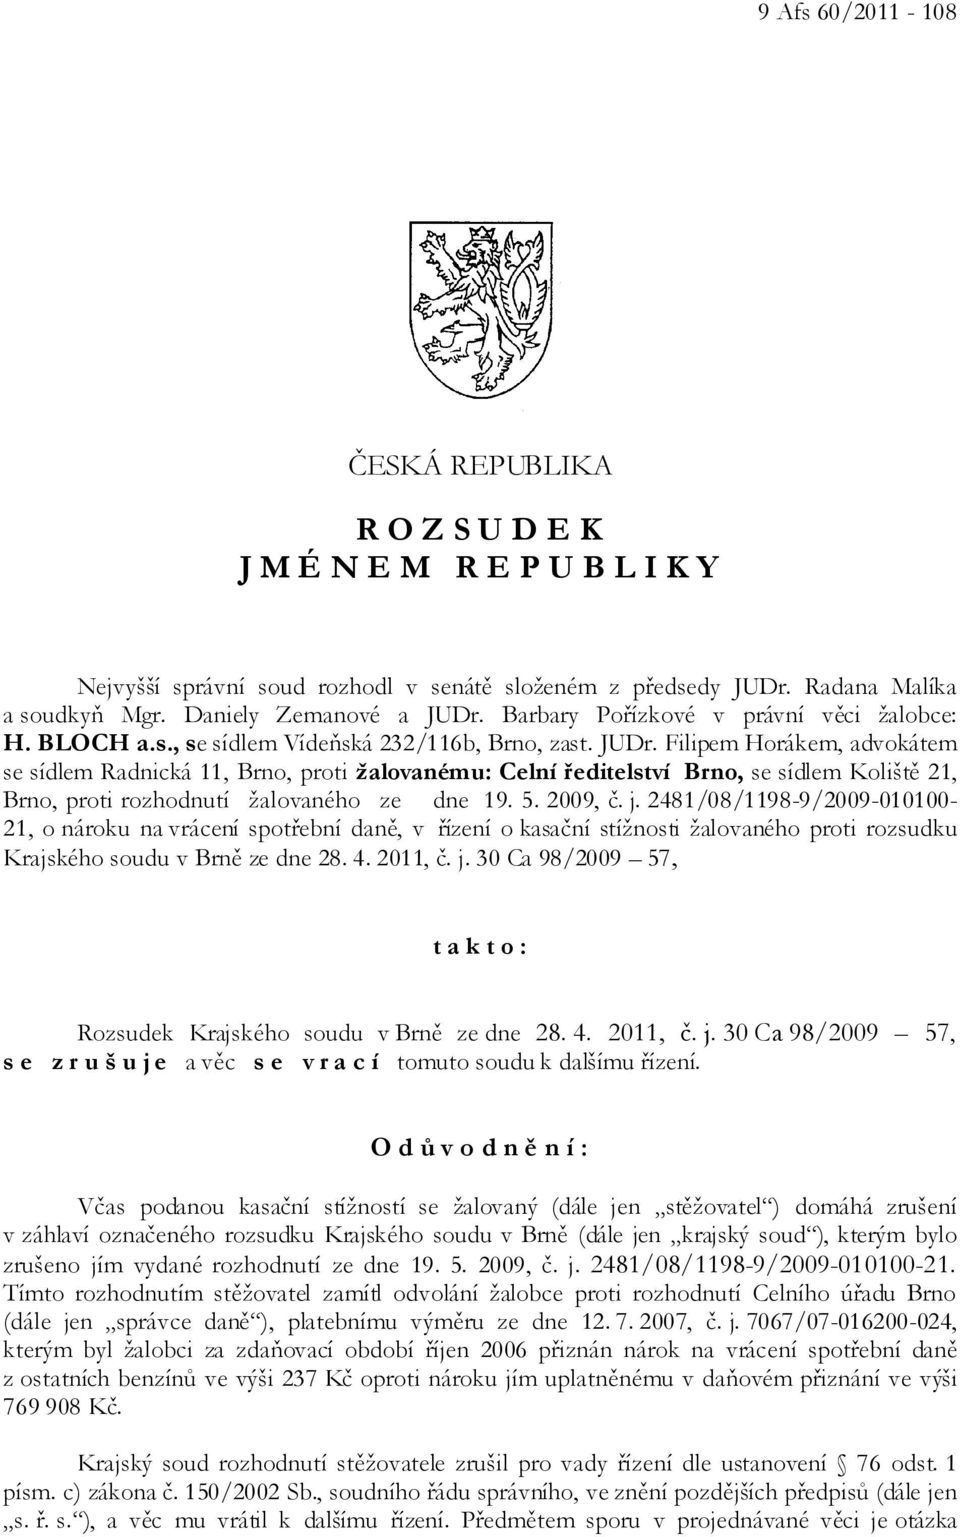 Filipem Horákem, advokátem se sídlem Radnická 11, Brno, proti žalovanému: Celní ředitelství Brno, se sídlem Koliště 21, Brno, proti rozhodnutí žalovaného ze dne 19. 5. 2009, č. j.